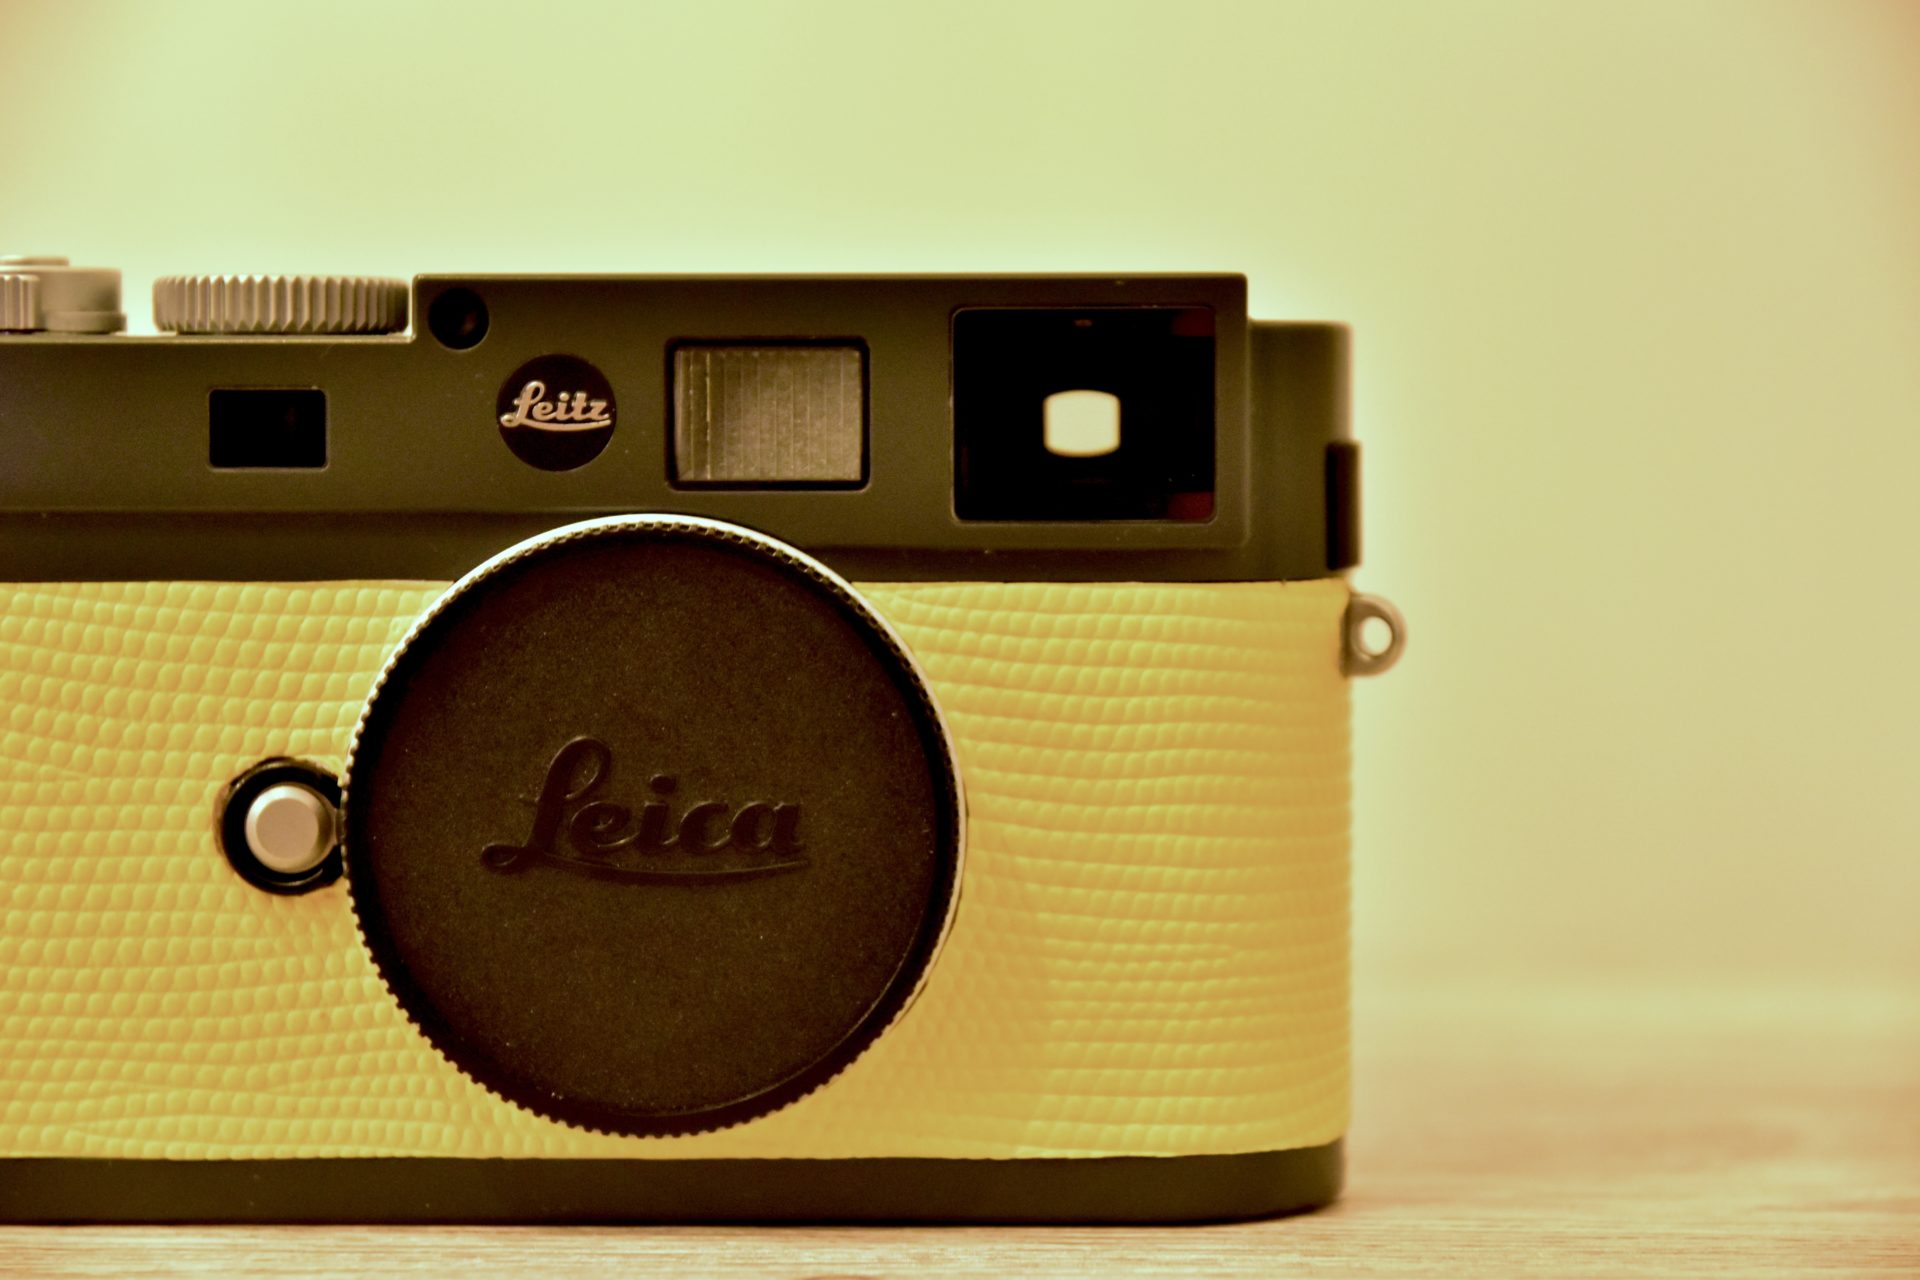 ライカ LEICA オリジナルロゴマーク バッジ 10mm 赤 - デジタルカメラ